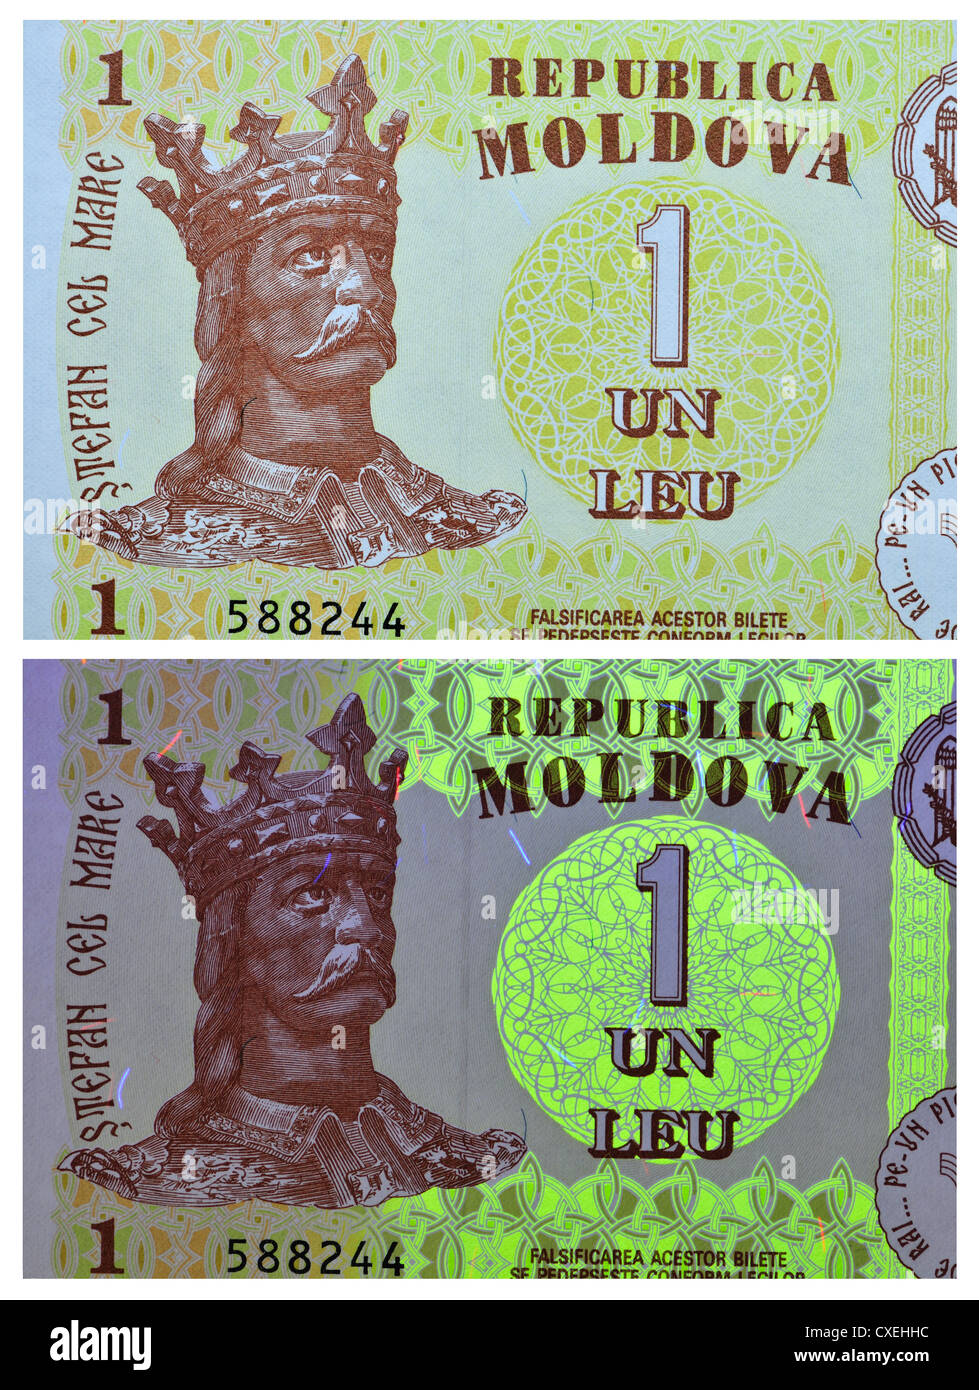 Vu des billets avec la lumière naturelle et la lumière UV, montrant les fonctions de sécurité. Un Leu remarque , Moldova, 2010 Banque D'Images